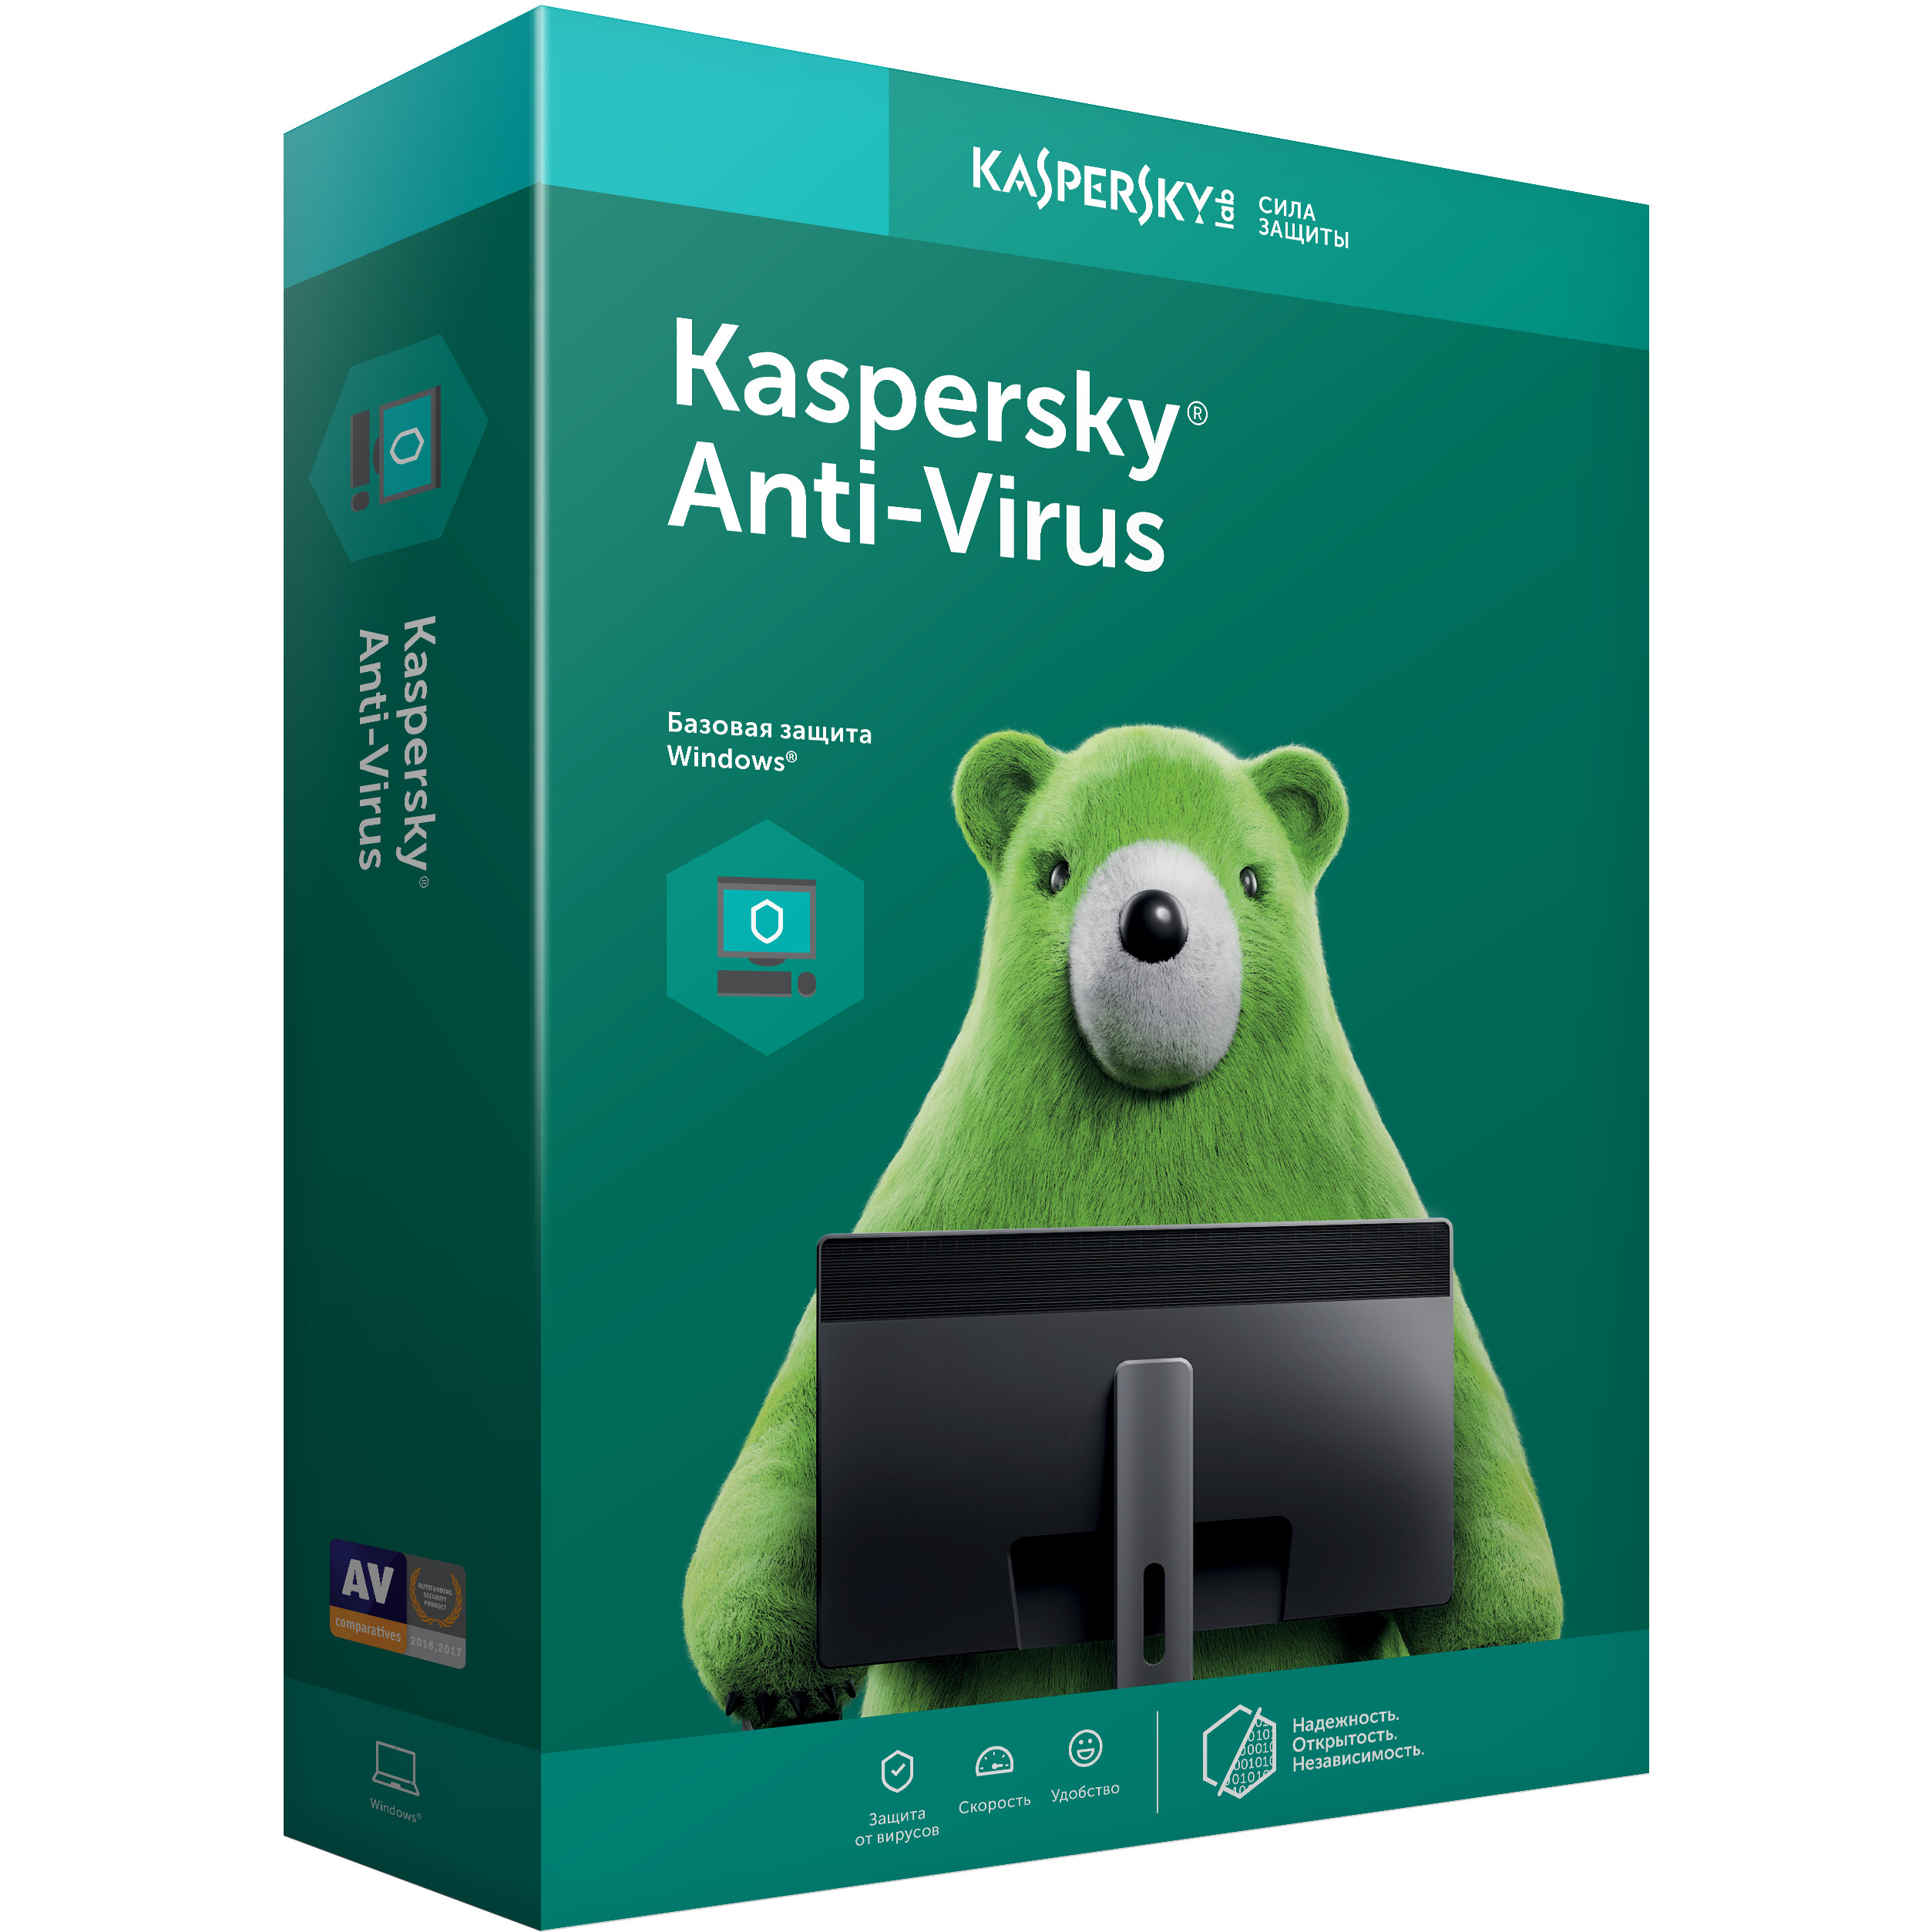 Phần Mềm Kaspersky Antivirus 1Pc/12Tháng - Hải Anh Computer